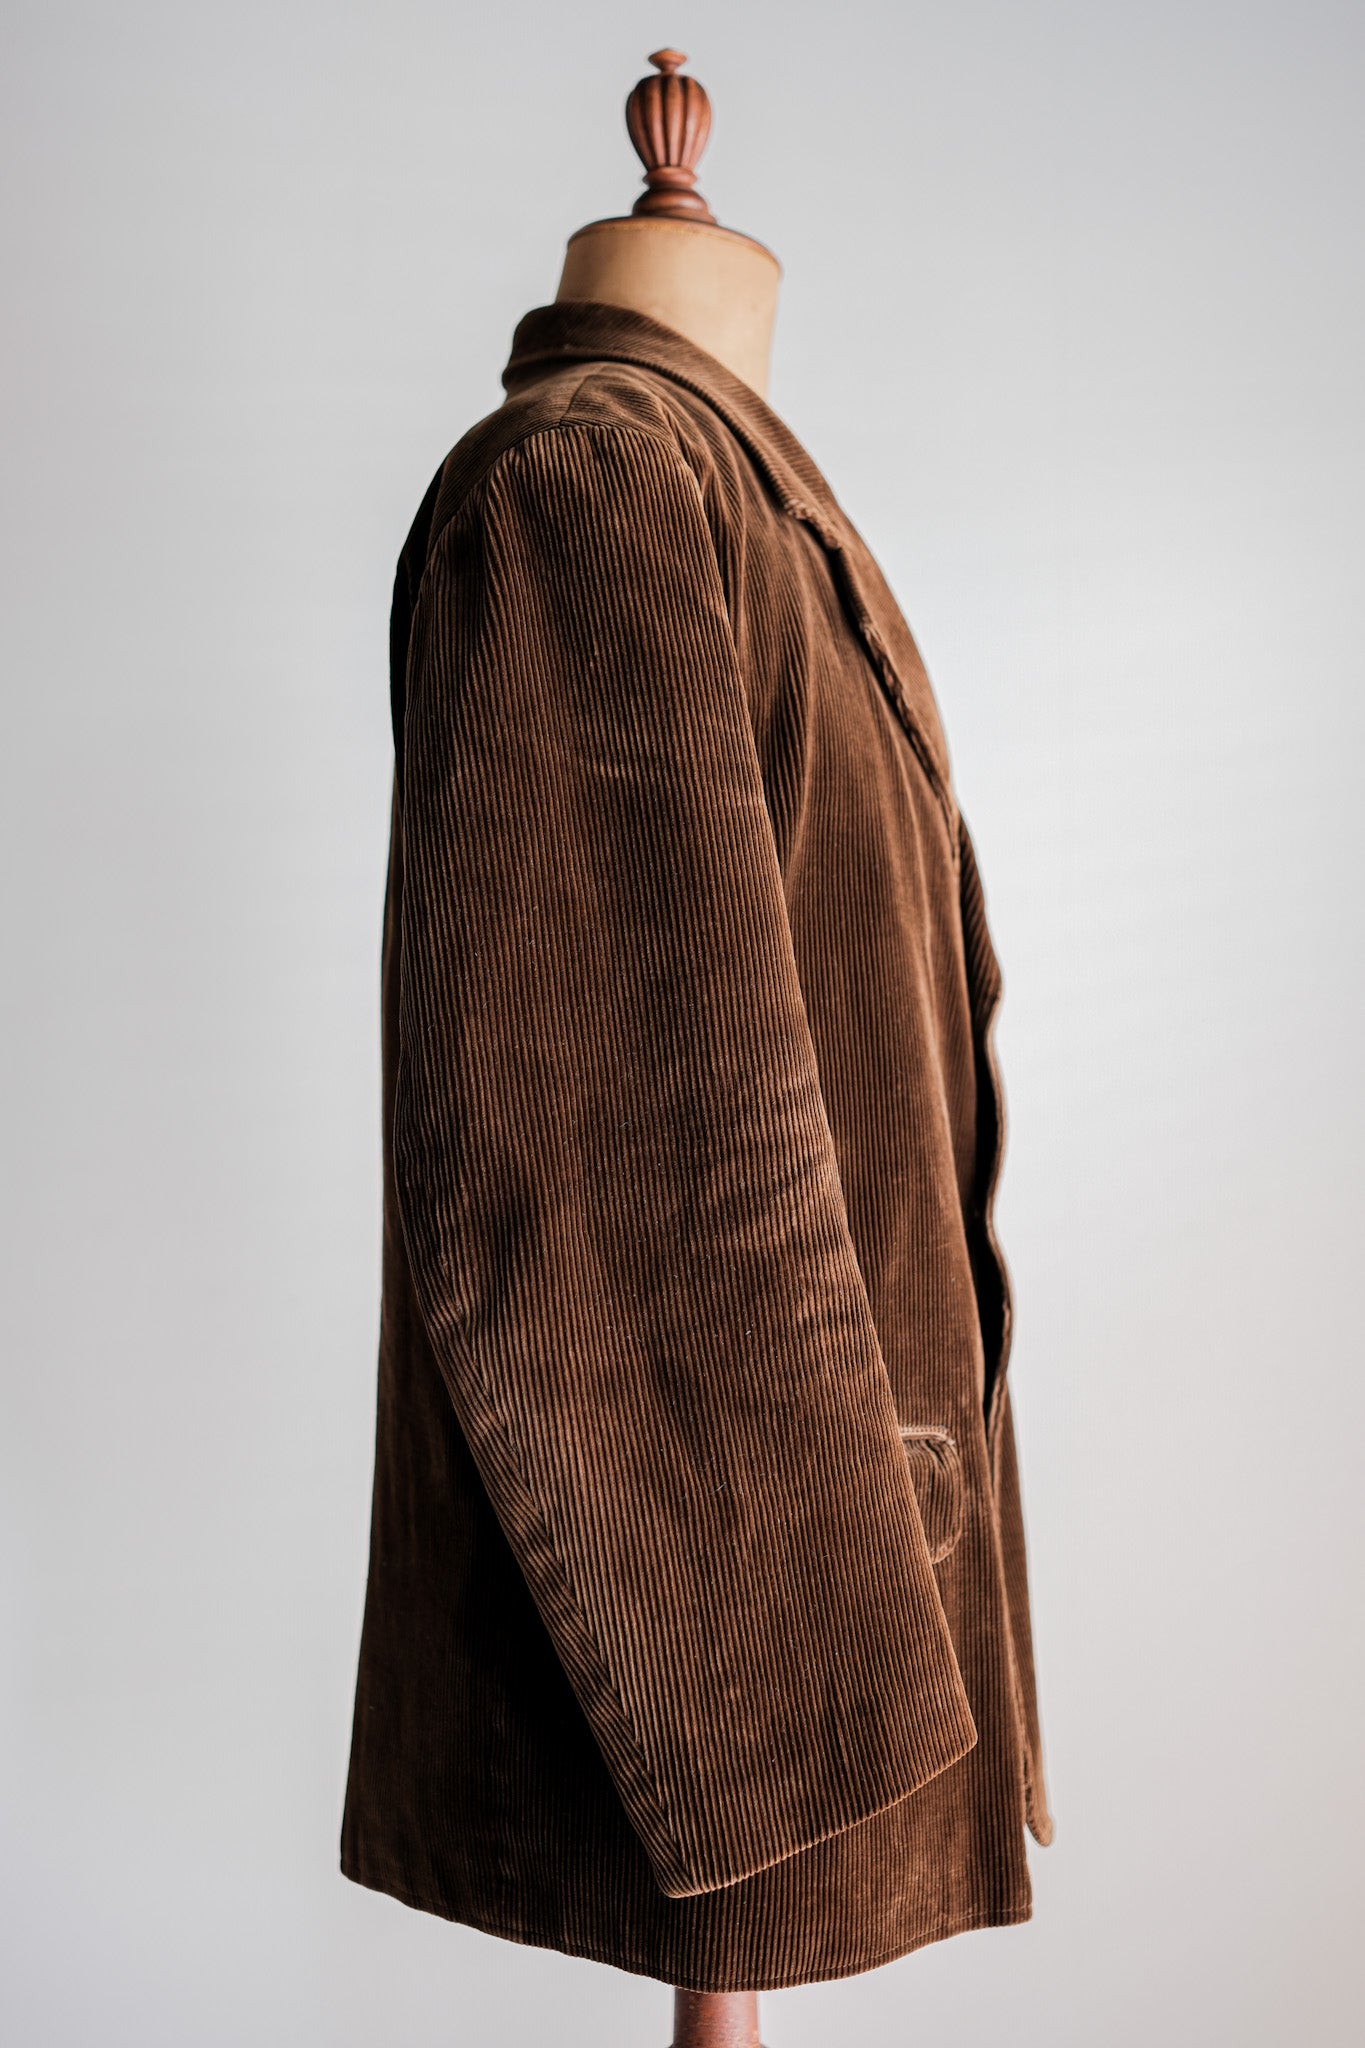 【~40's】French Vintage Brown Corduroy Lapel Work Jacket "Le Mont St. Michel"